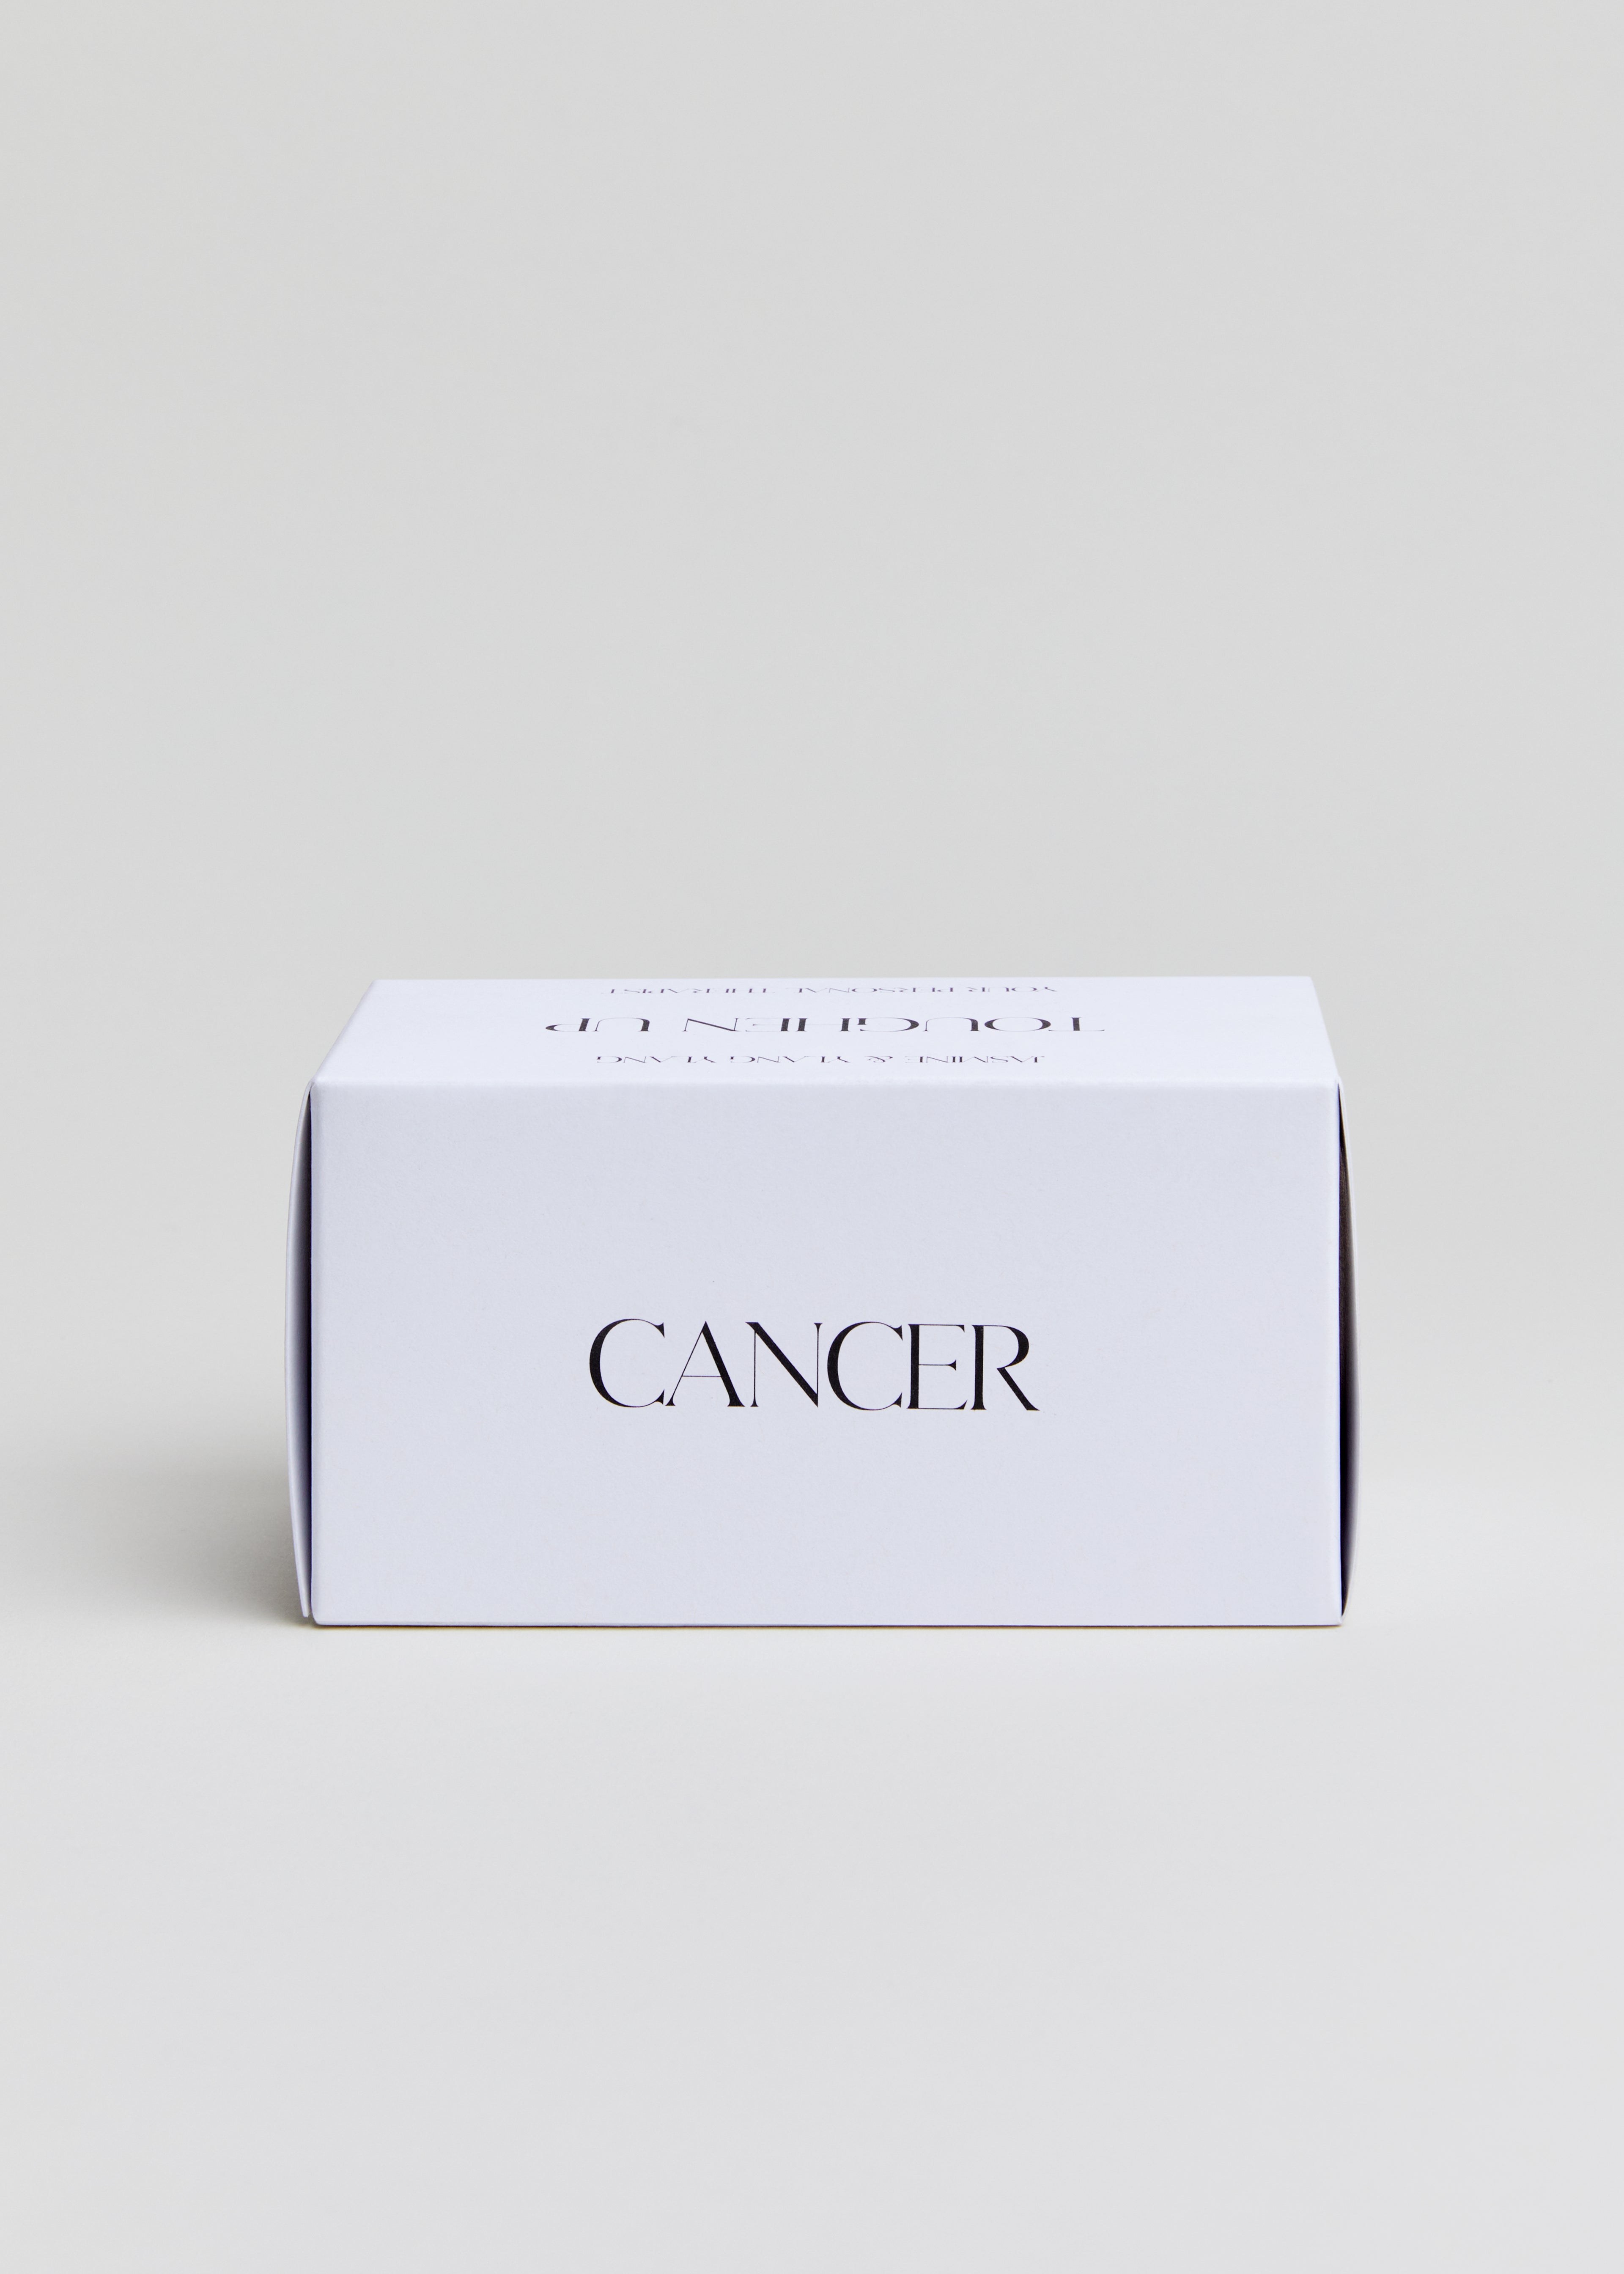 Cancer Soap Bar